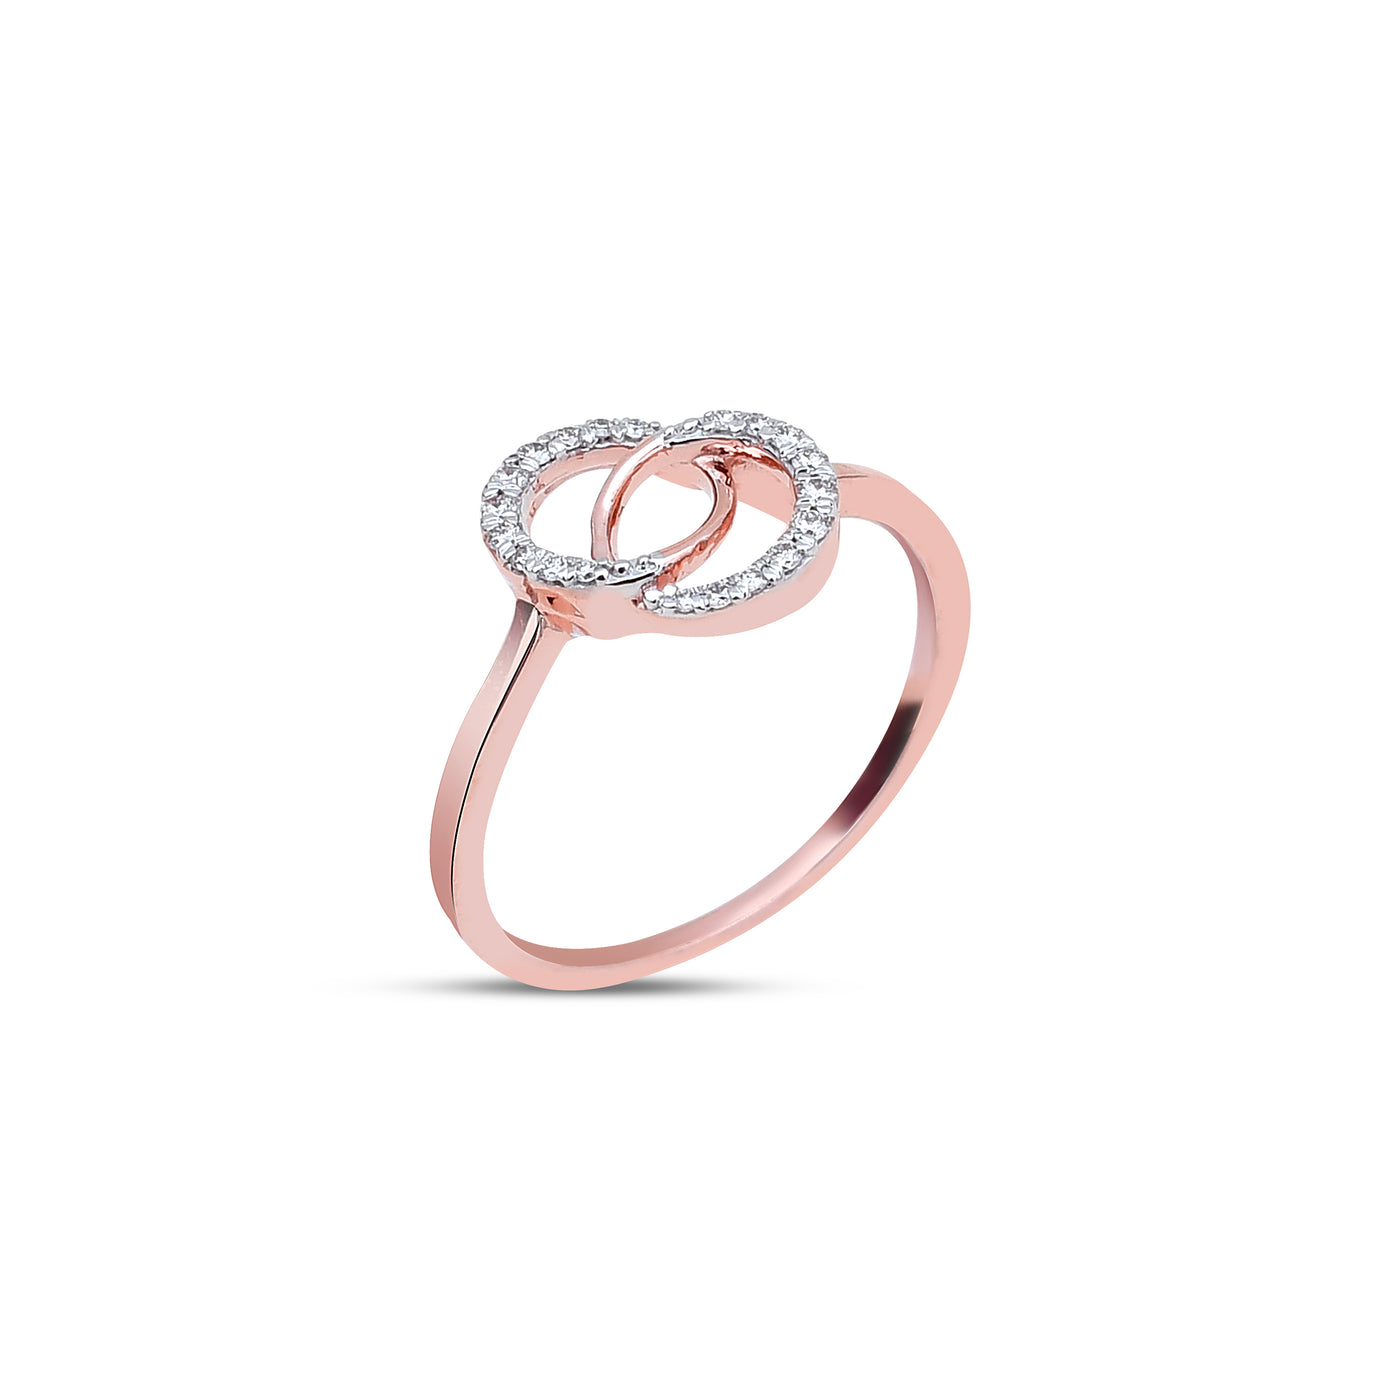 The Ezra Diamond Ring